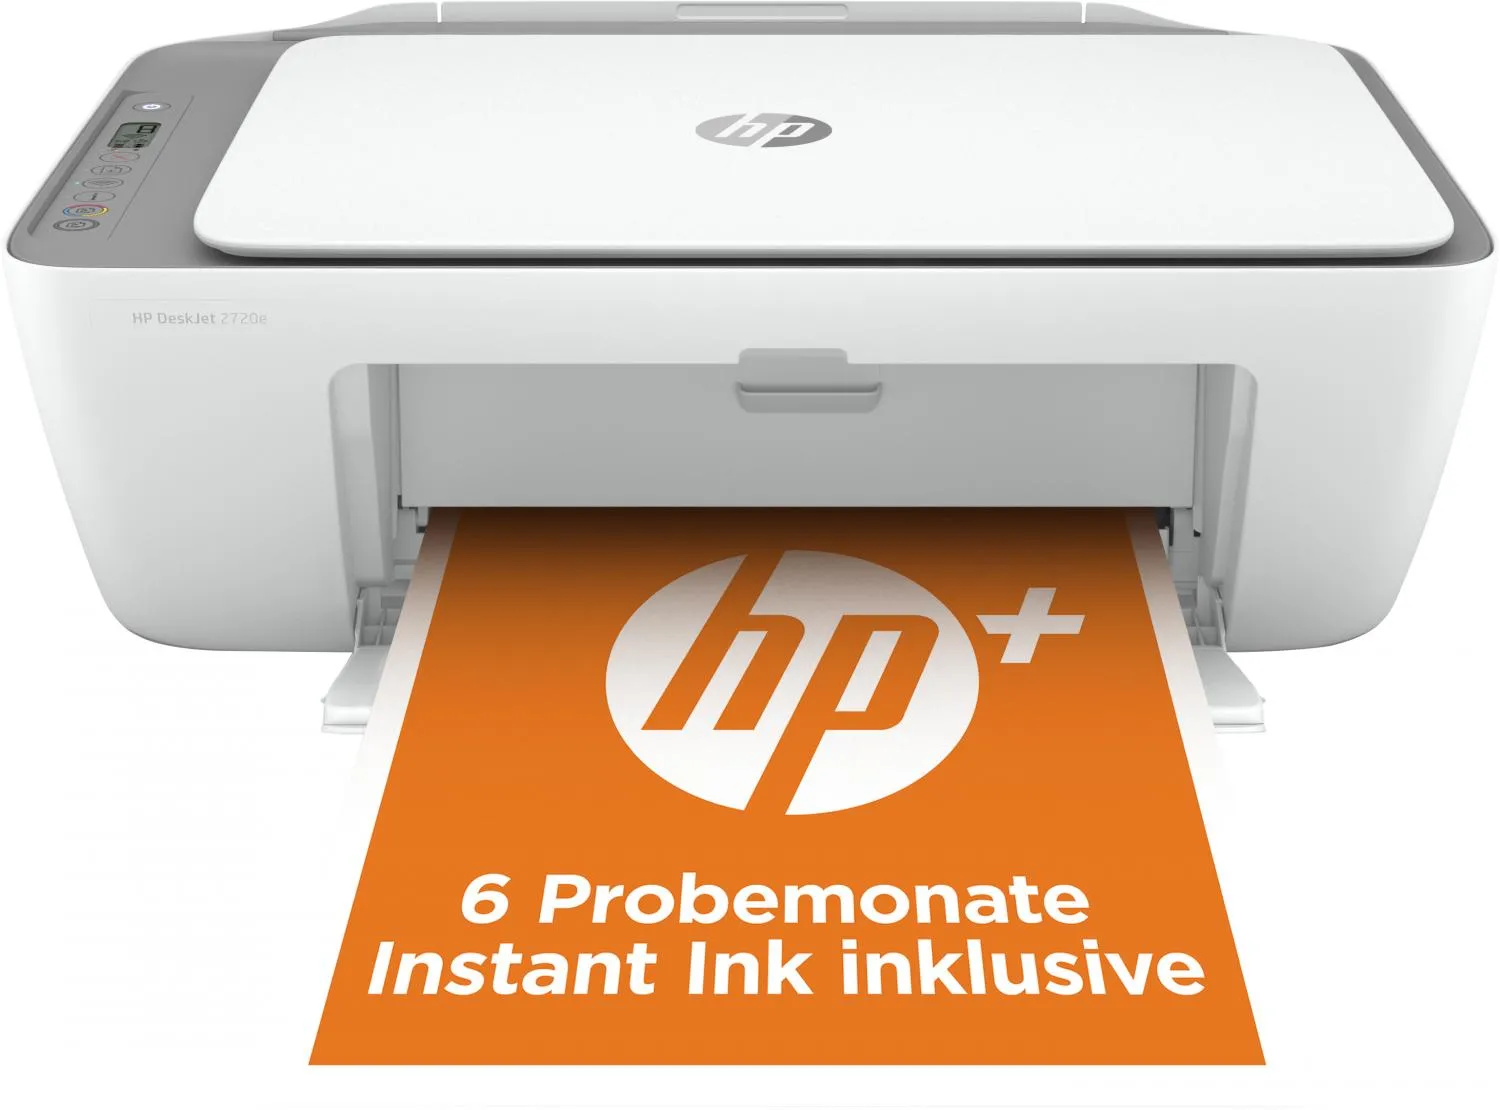 HP Deskjet Stampante Multifunzione 2720E Colore Stampante Per Casa